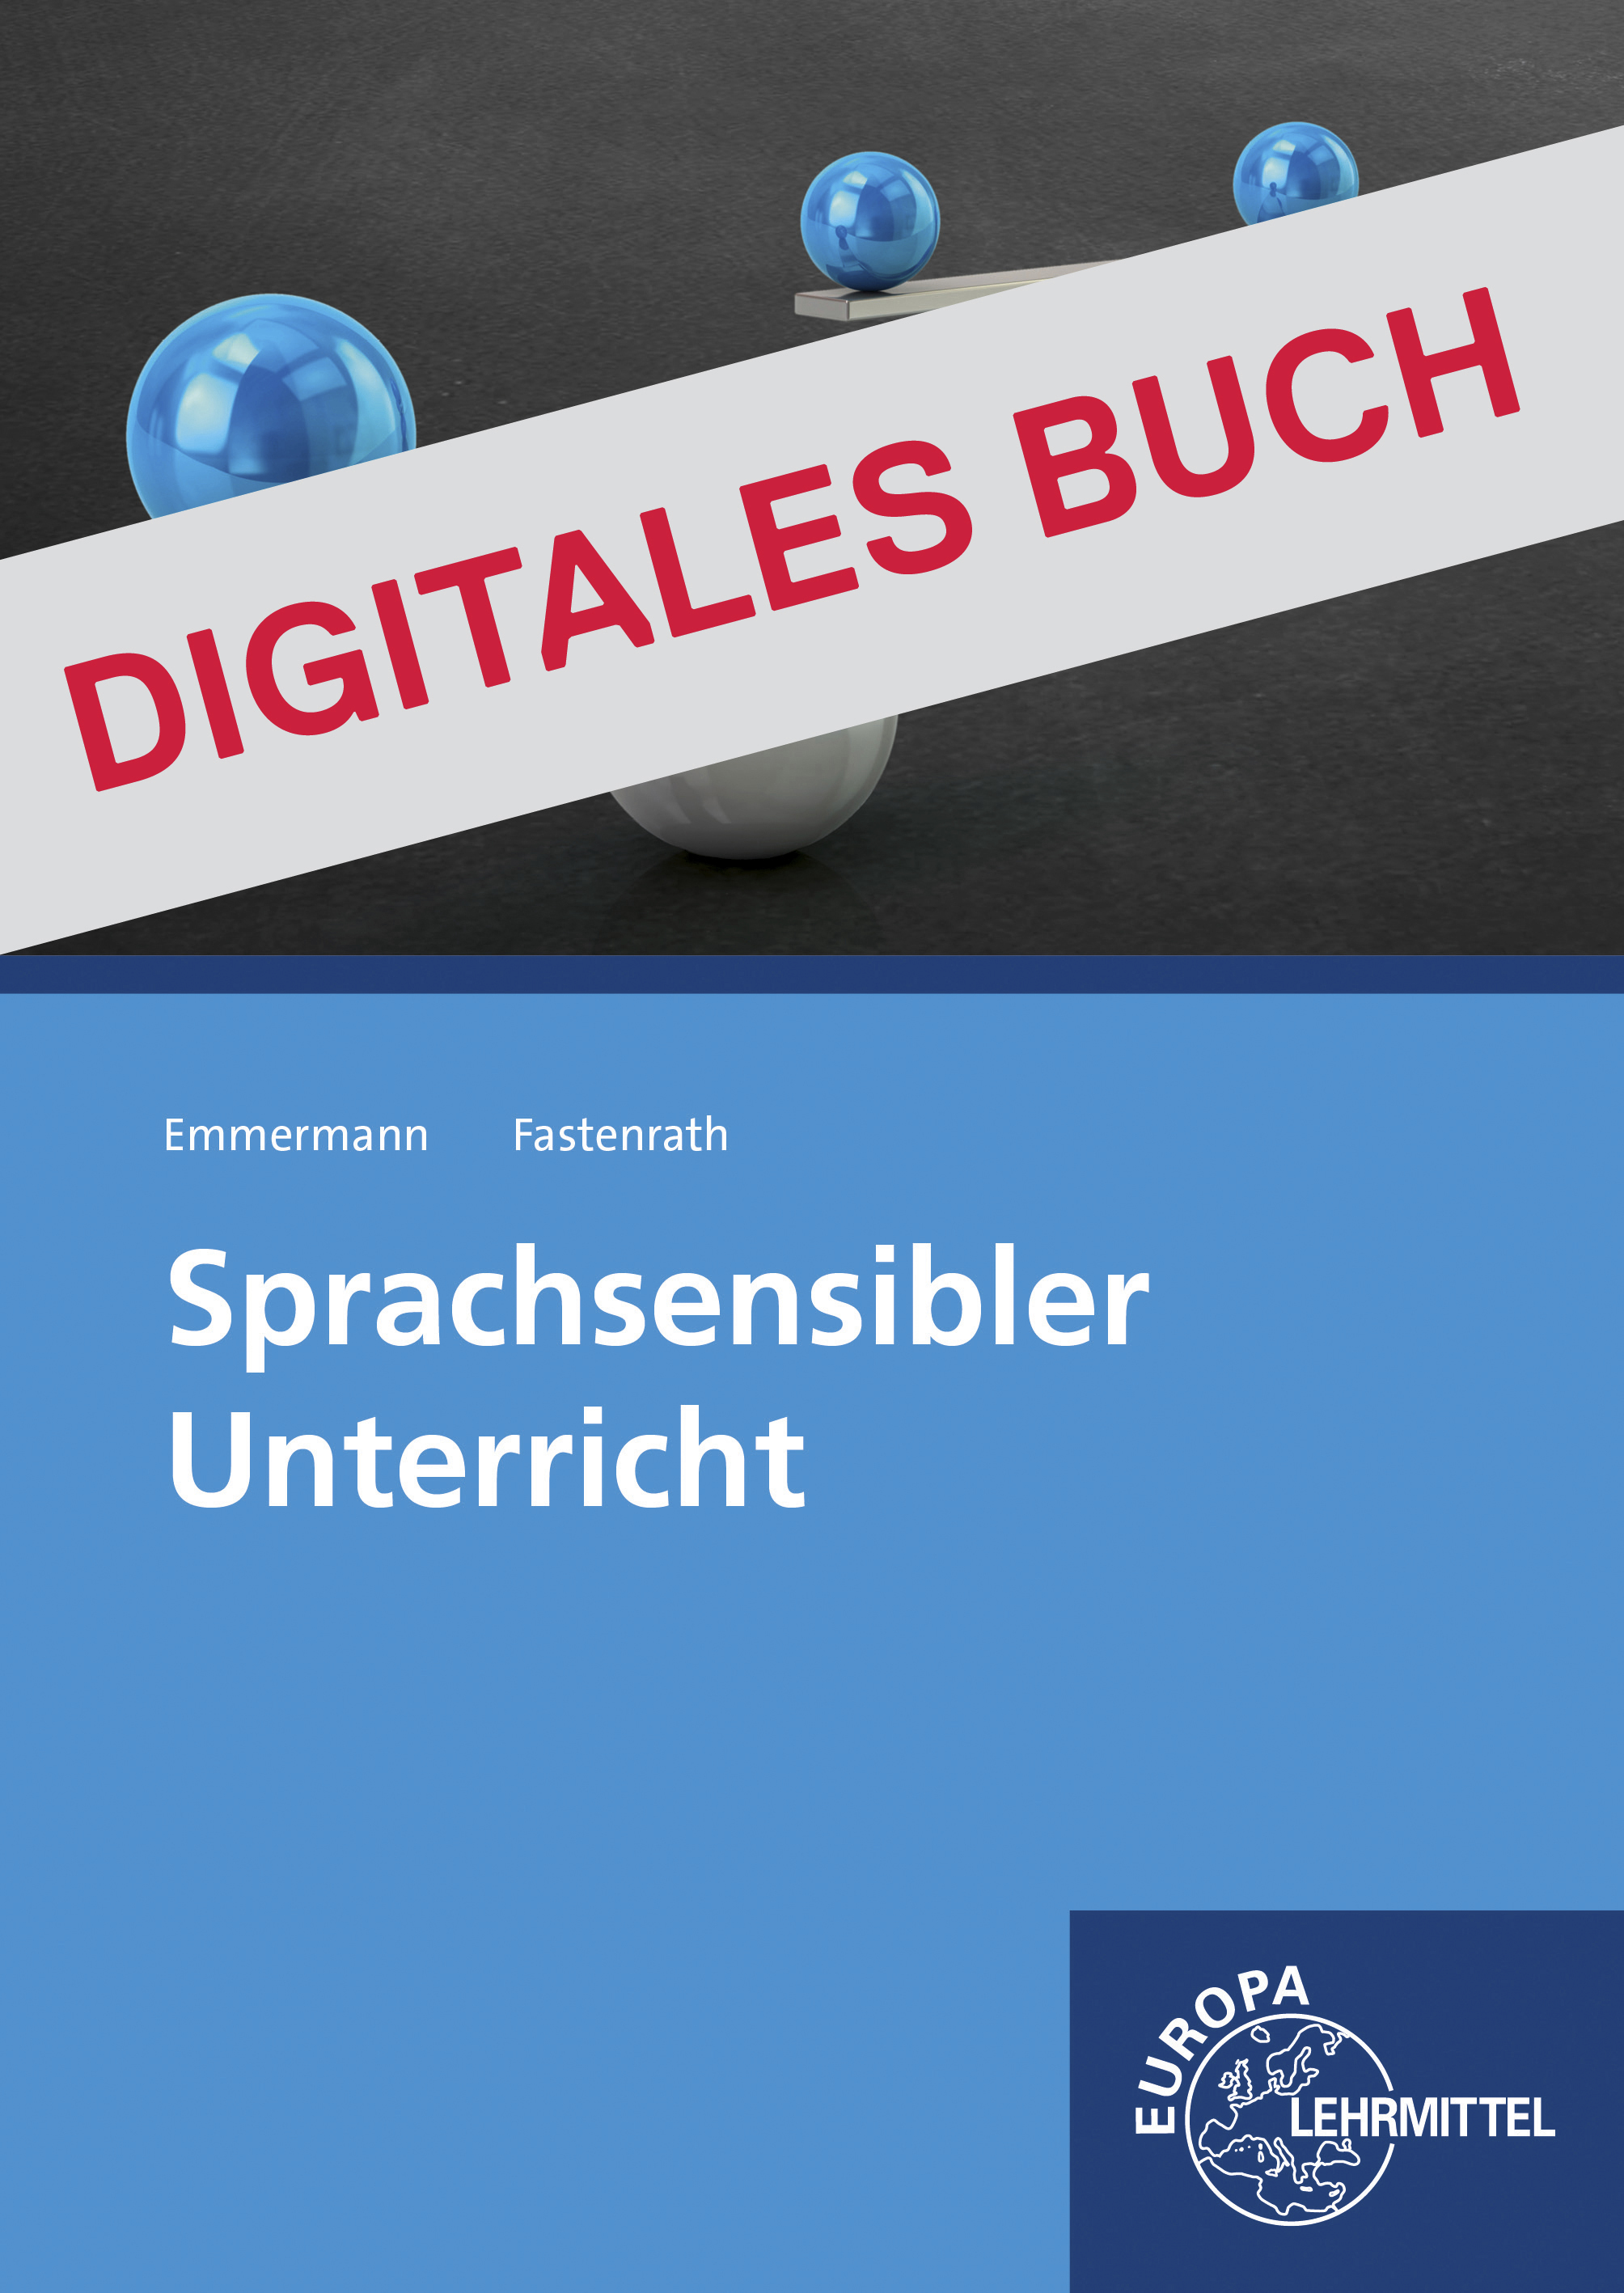 Sprachsensibler Unterricht - Digitales Buch